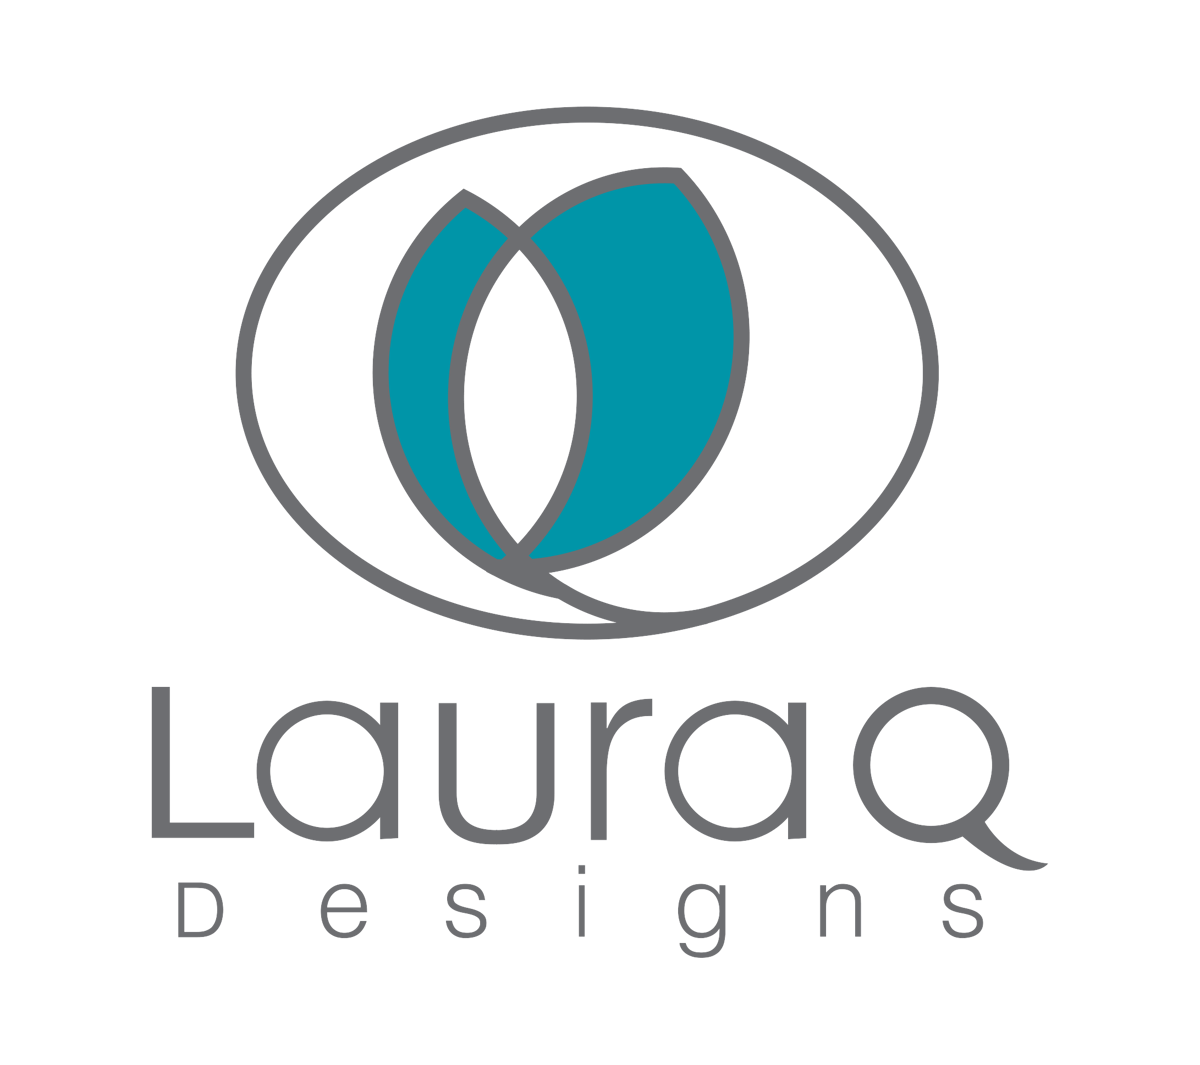 Laura Q Design Studio